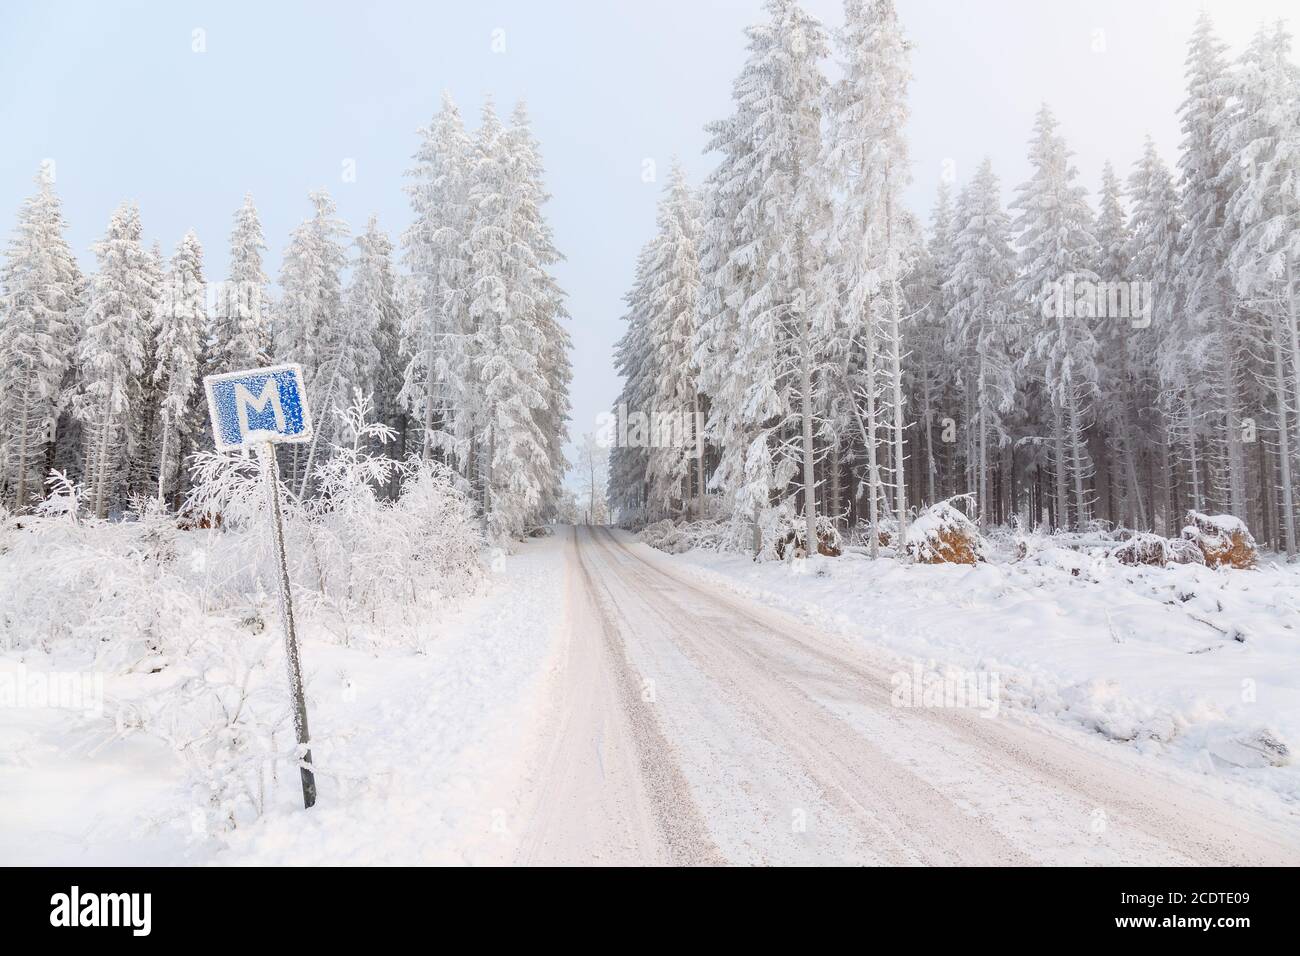 Lieu de rencontre sur une étroite route forestière dans un beau paysage d'hiver Banque D'Images